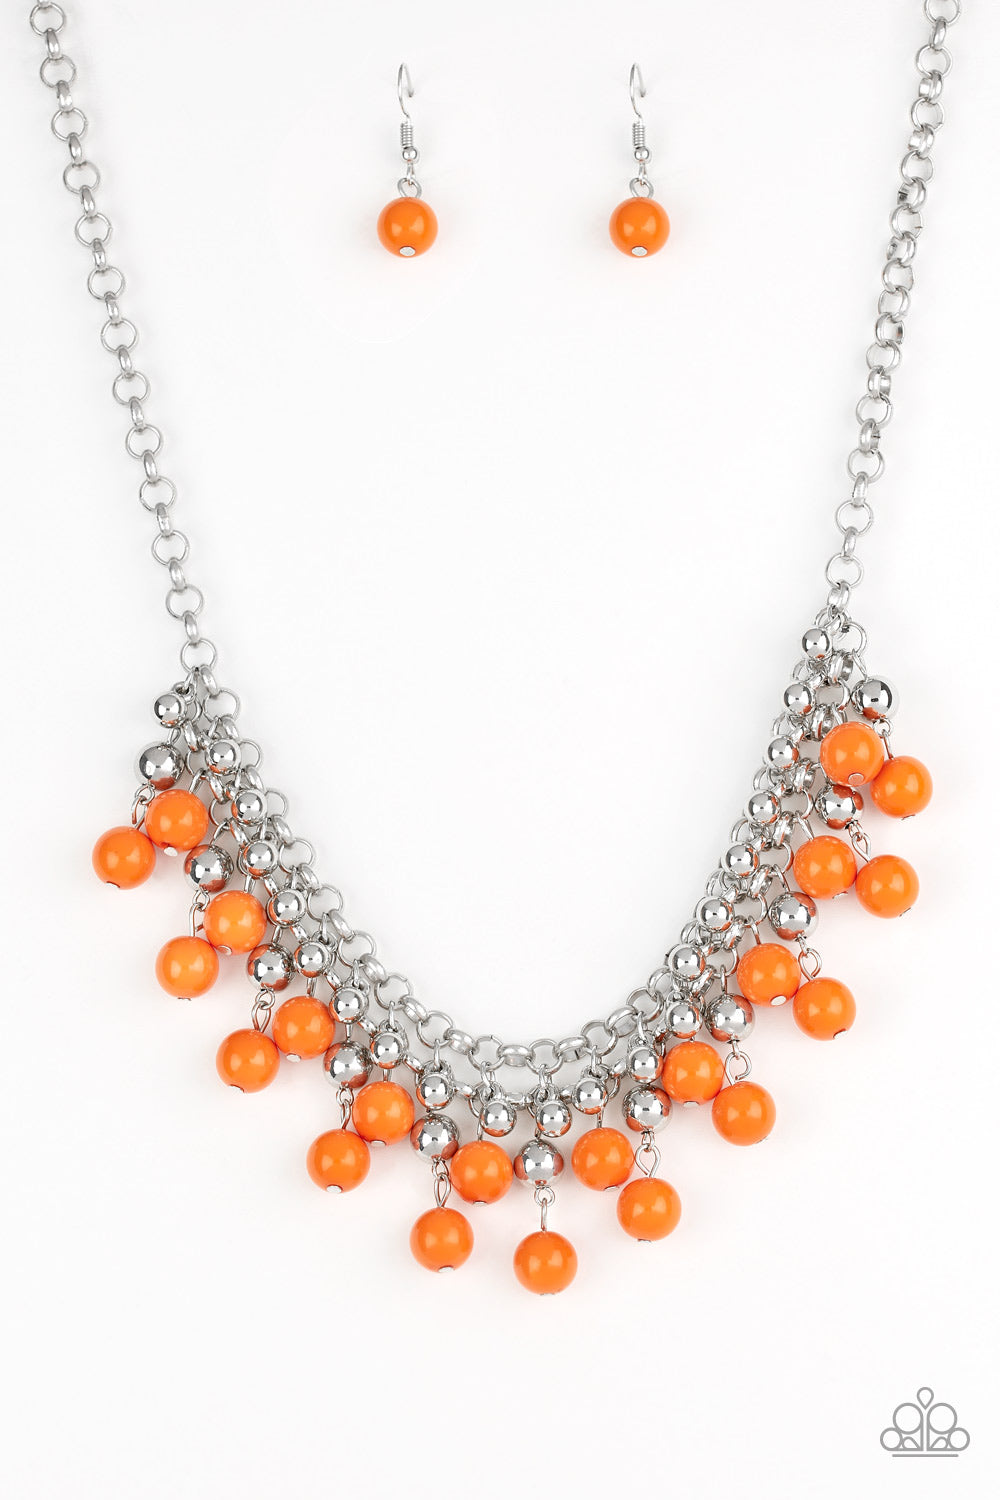 Friday Night Fringe - Orange Necklace